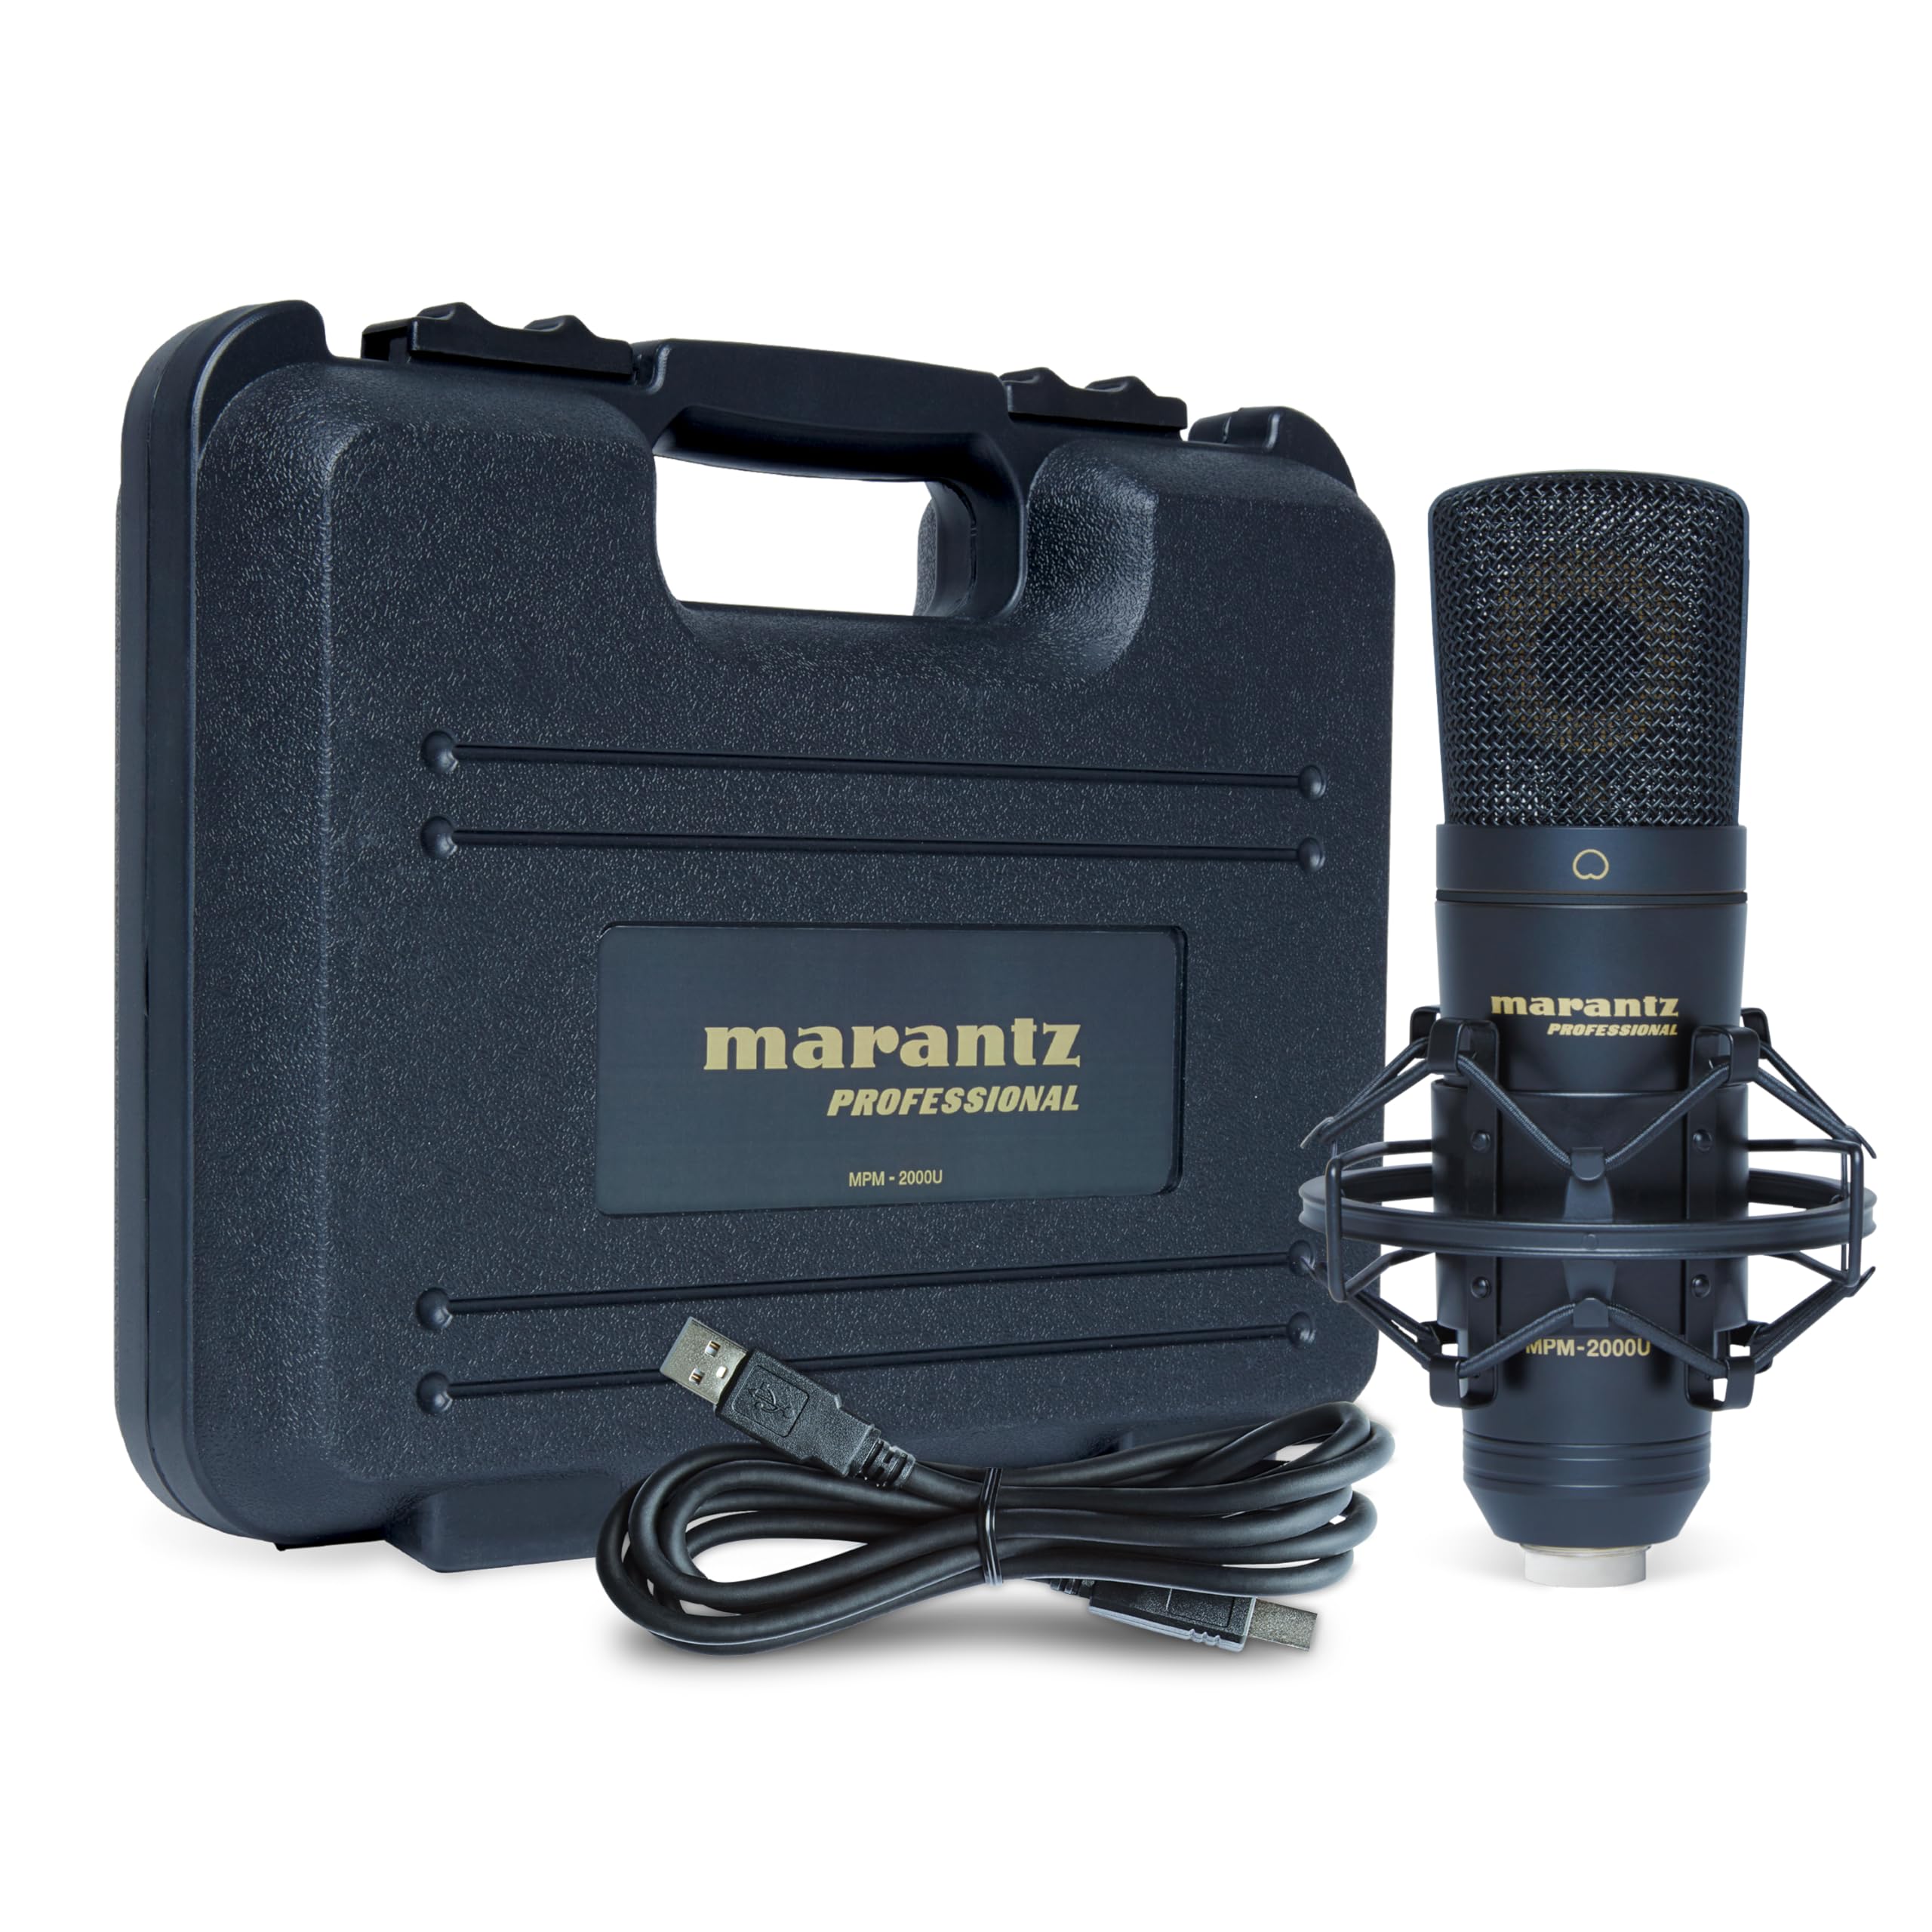 Marantz Professional MPM-2000U - Großmembran USB Mikrofon für Computeraufnahmen, Podcast und Gaming mit Mikrofonspinne, USB Kabel und Tasche enthalten